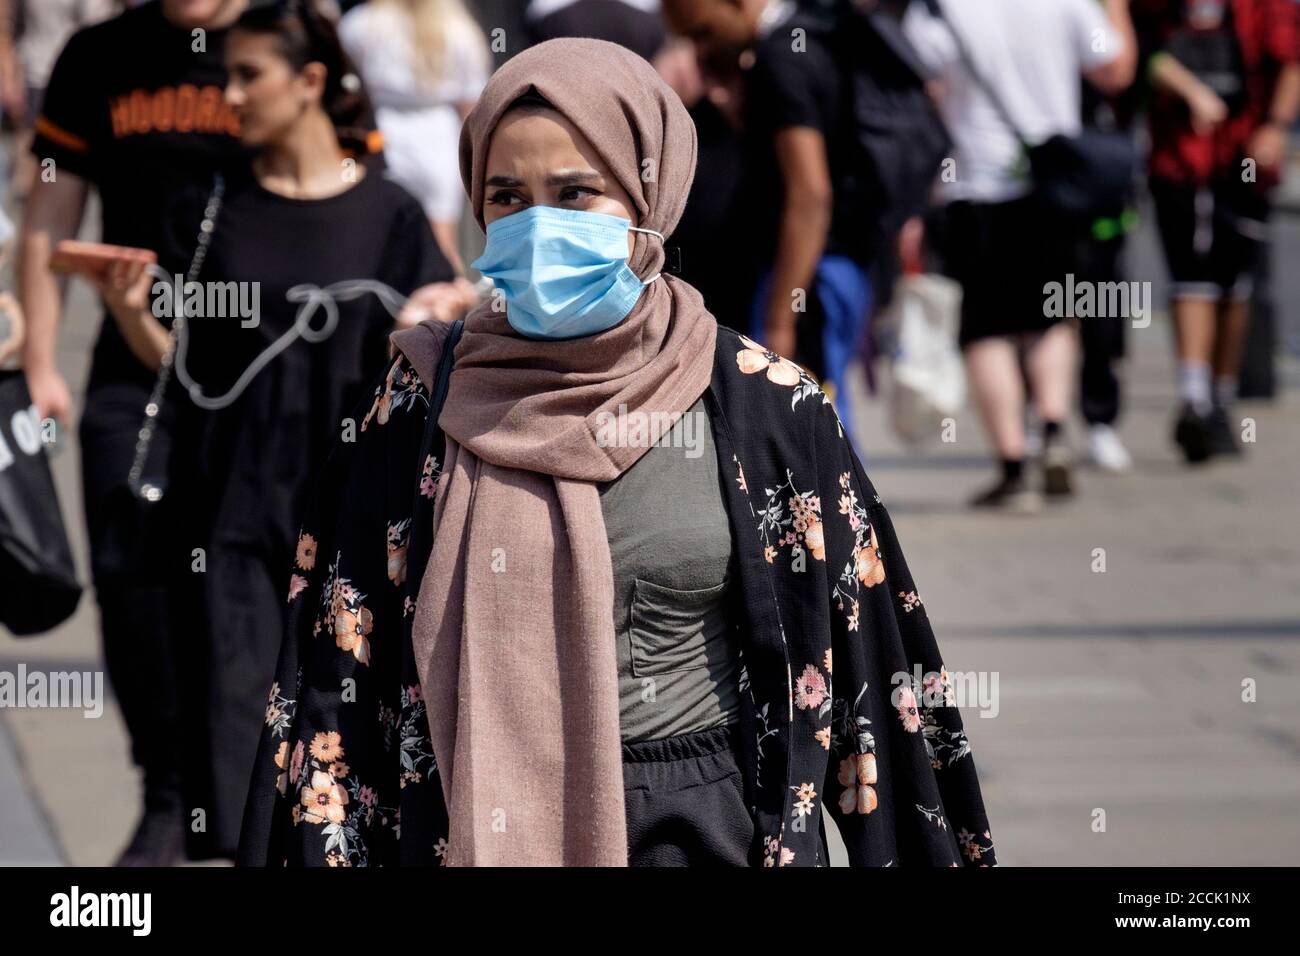 Junge muslimische Frau, die ein operatives Gesicht trägt, in einer belebten Straße, London, Großbritannien. Stockfoto